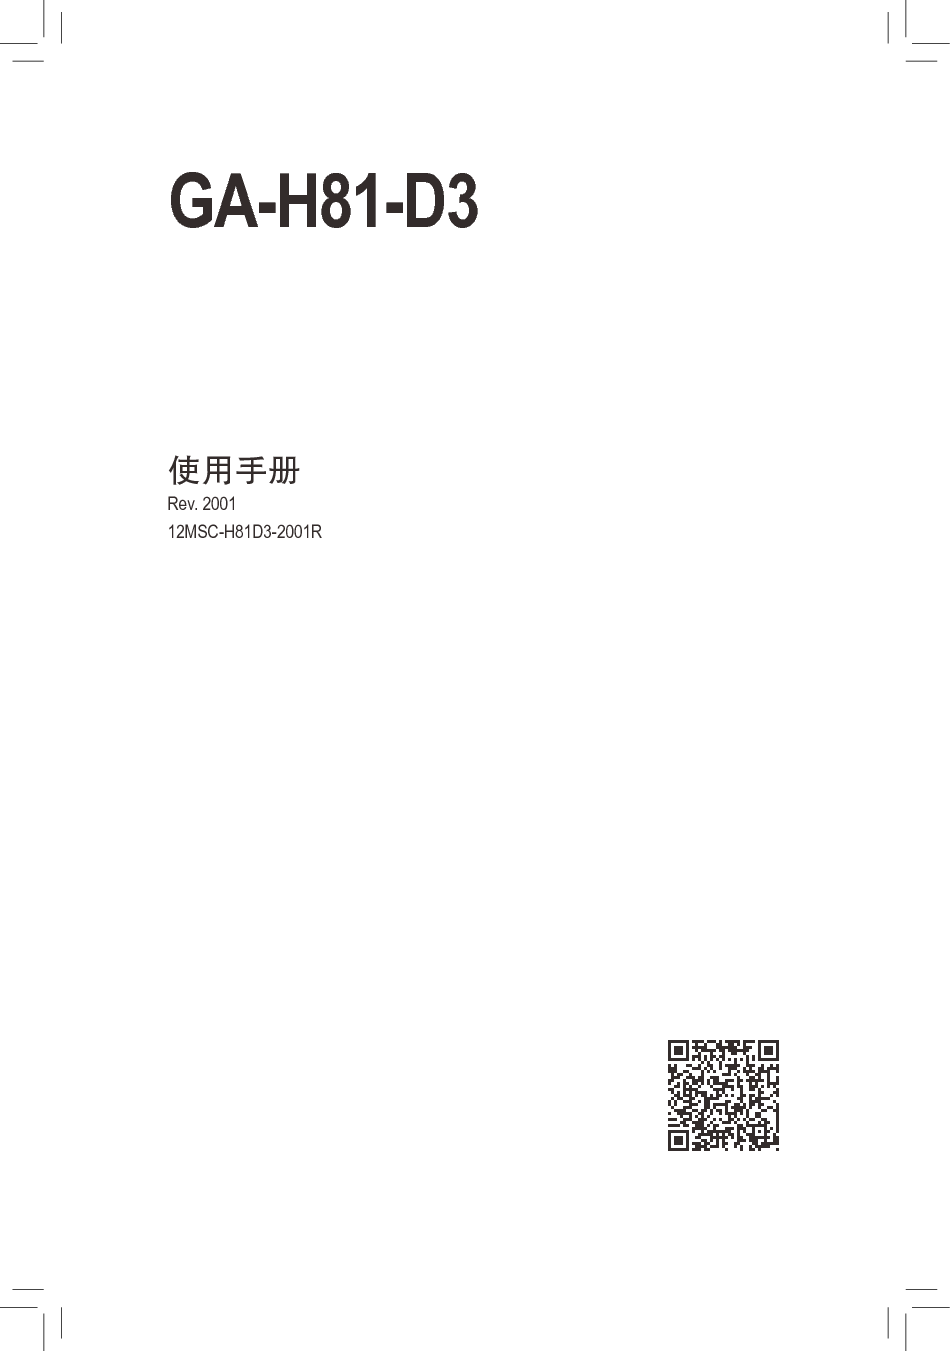 技嘉 Gigabyte GA-H81-D3 2001版 使用手册 封面